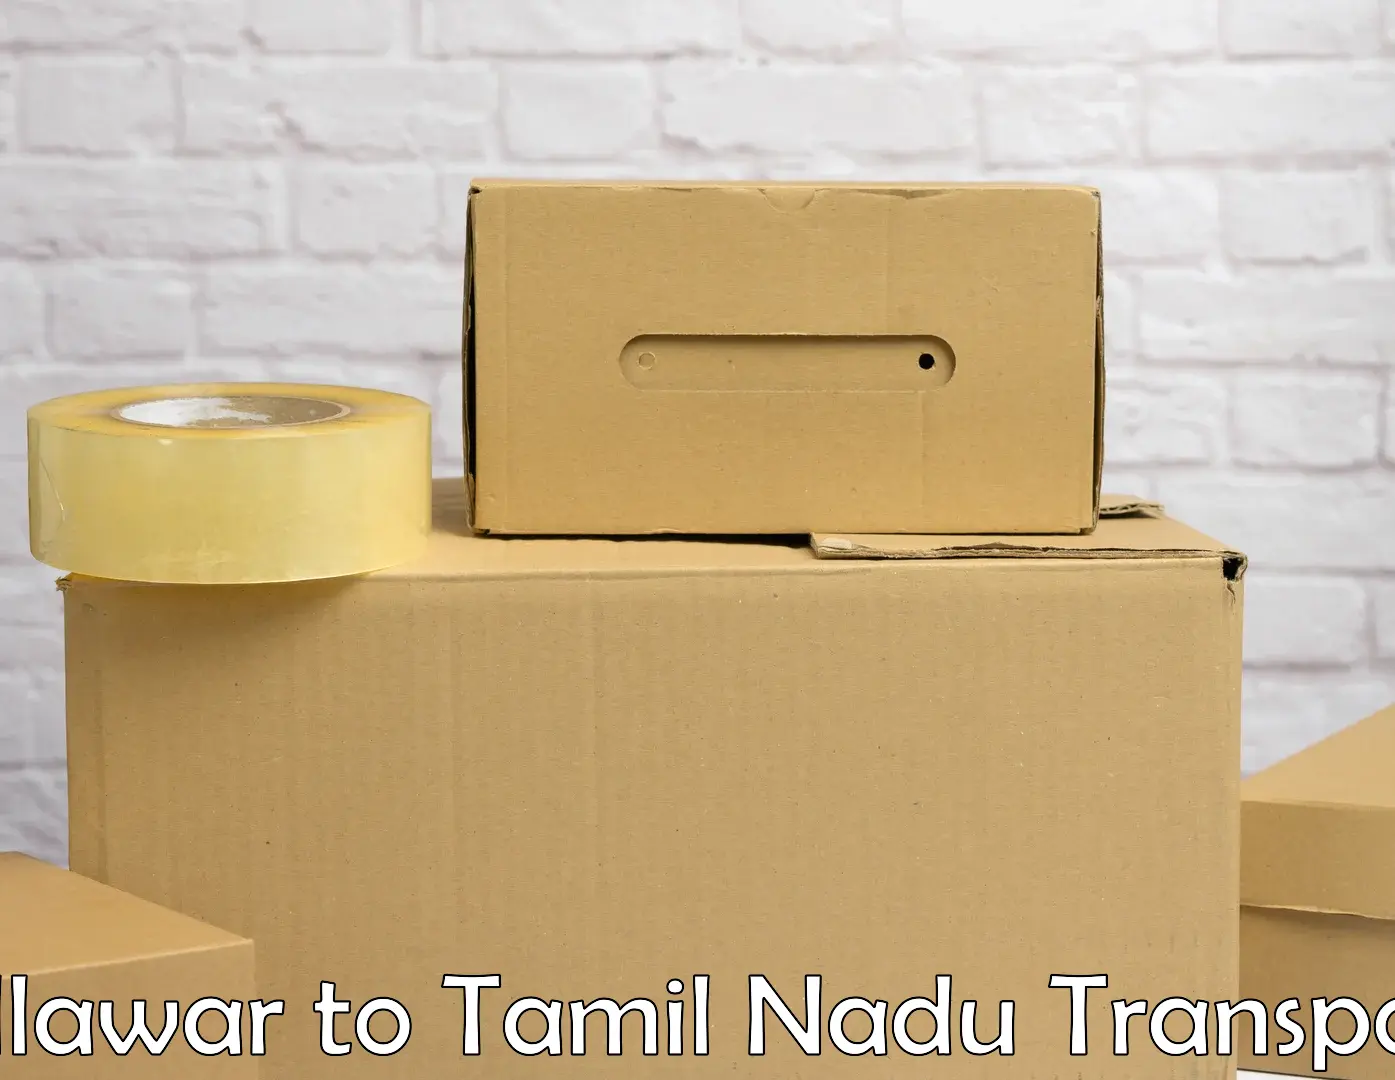 Pick up transport service Billawar to Tamil Nadu